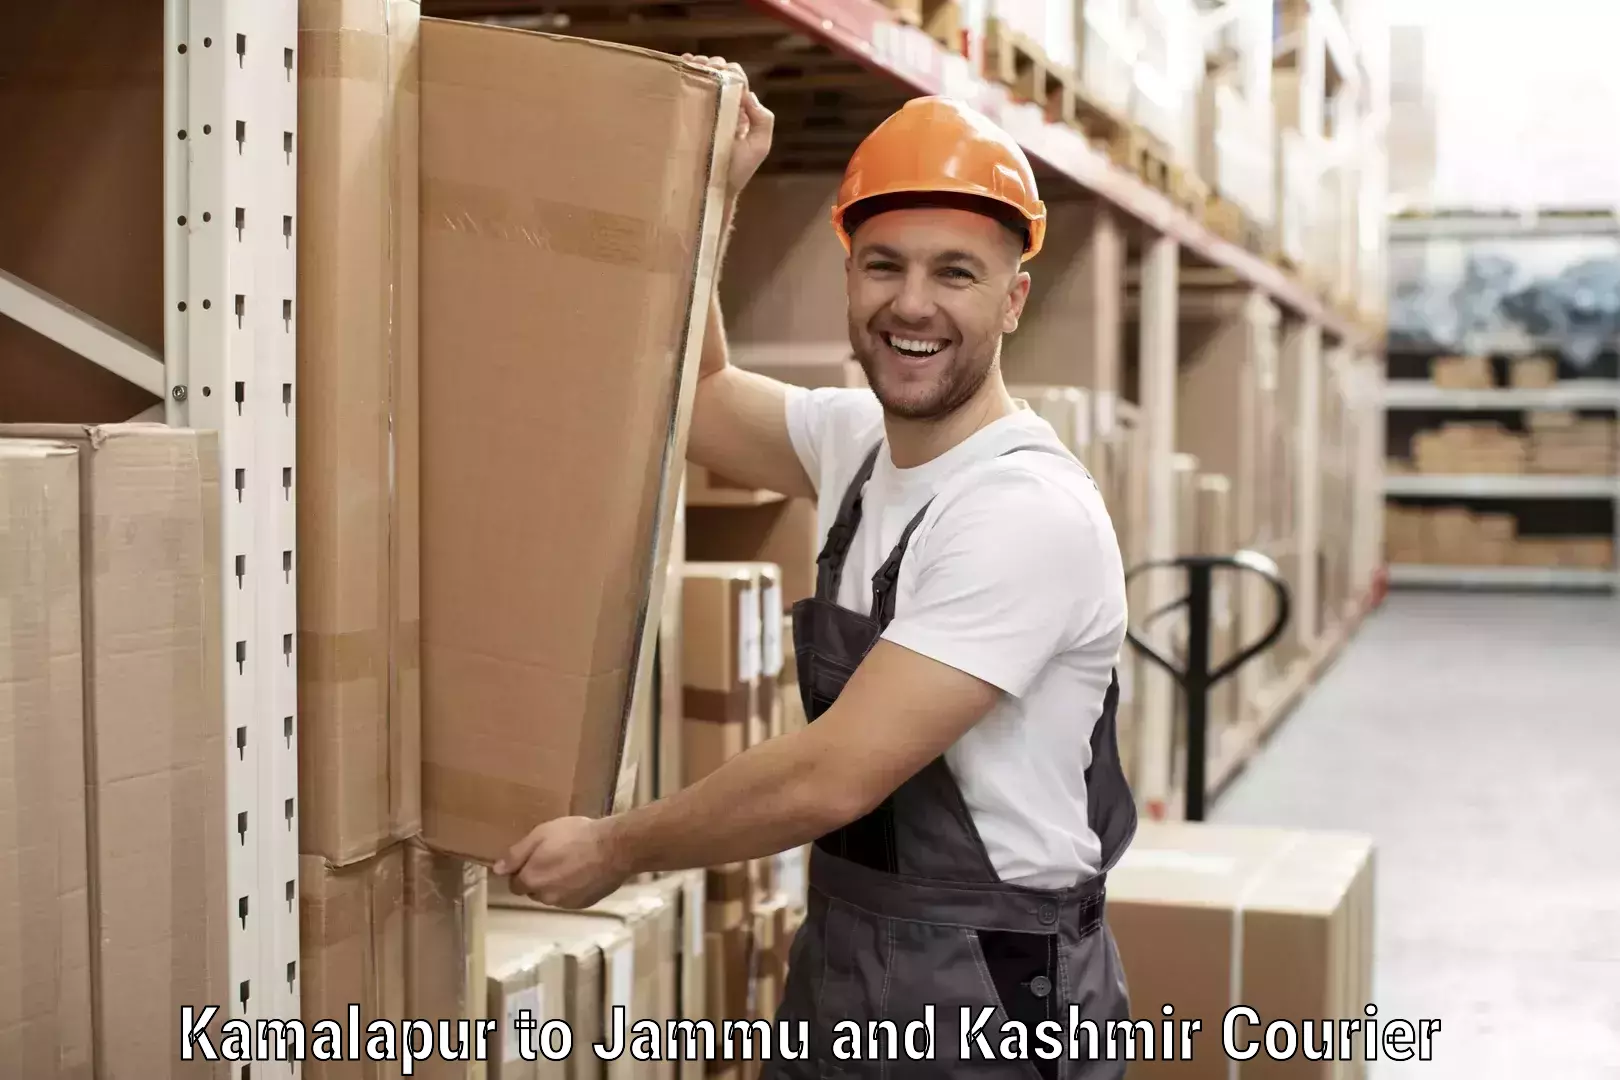 Business shipping needs Kamalapur to Sunderbani